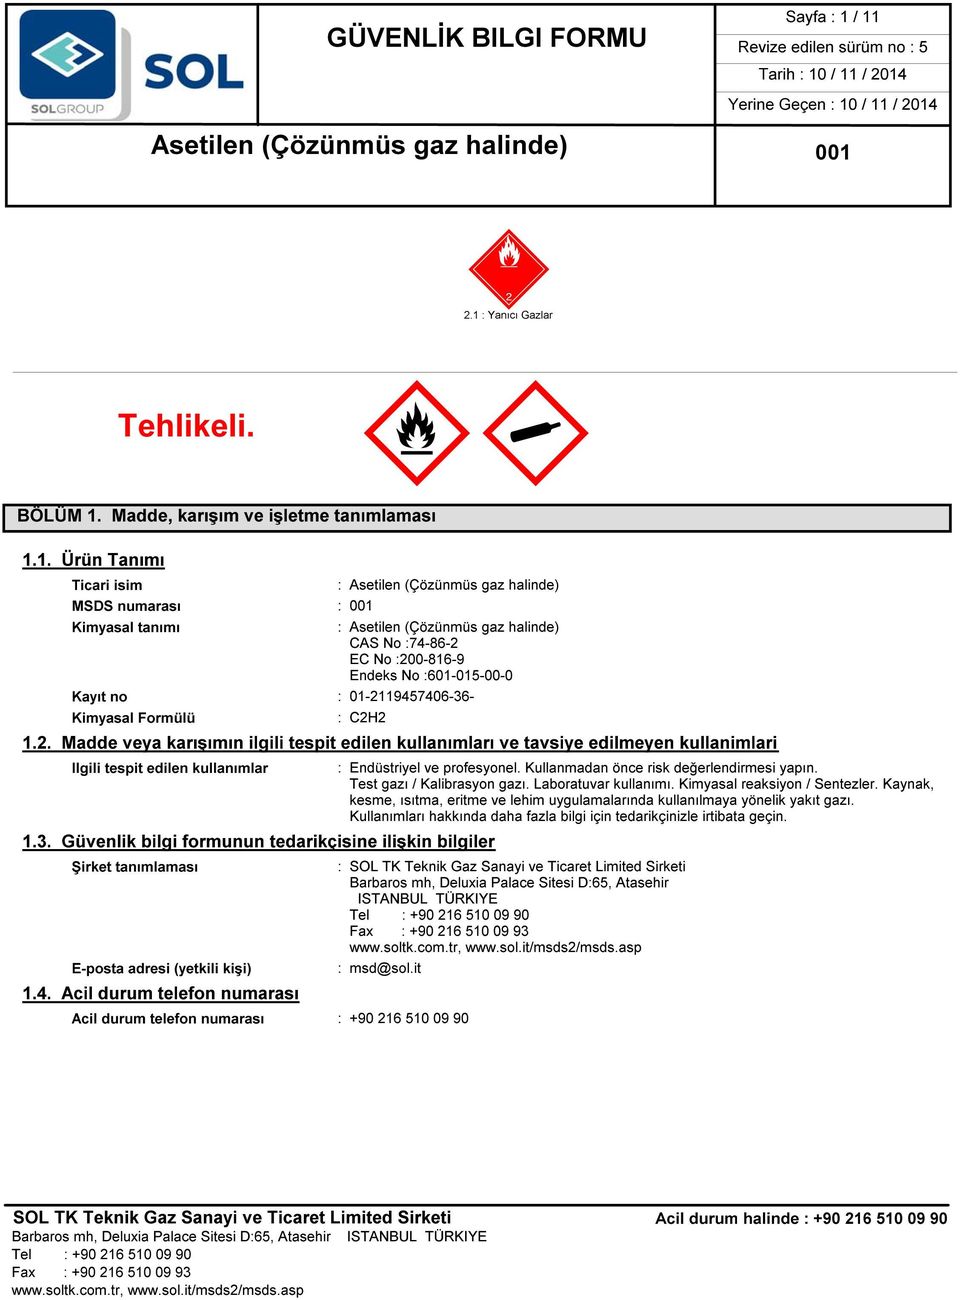 (Çözünmüs gaz halinde) CAS No :74-86-2 EC No :200-816-9 Endeks No :601-015-00-0 Kayıt no : 01-2119457406-36- Kimyasal Formülü : C2H2 1.2. Madde veya karışımın ilgili tespit edilen kullanımları ve tavsiye edilmeyen kullanimlari Ilgili tespit edilen kullanımlar : Endüstriyel ve profesyonel.